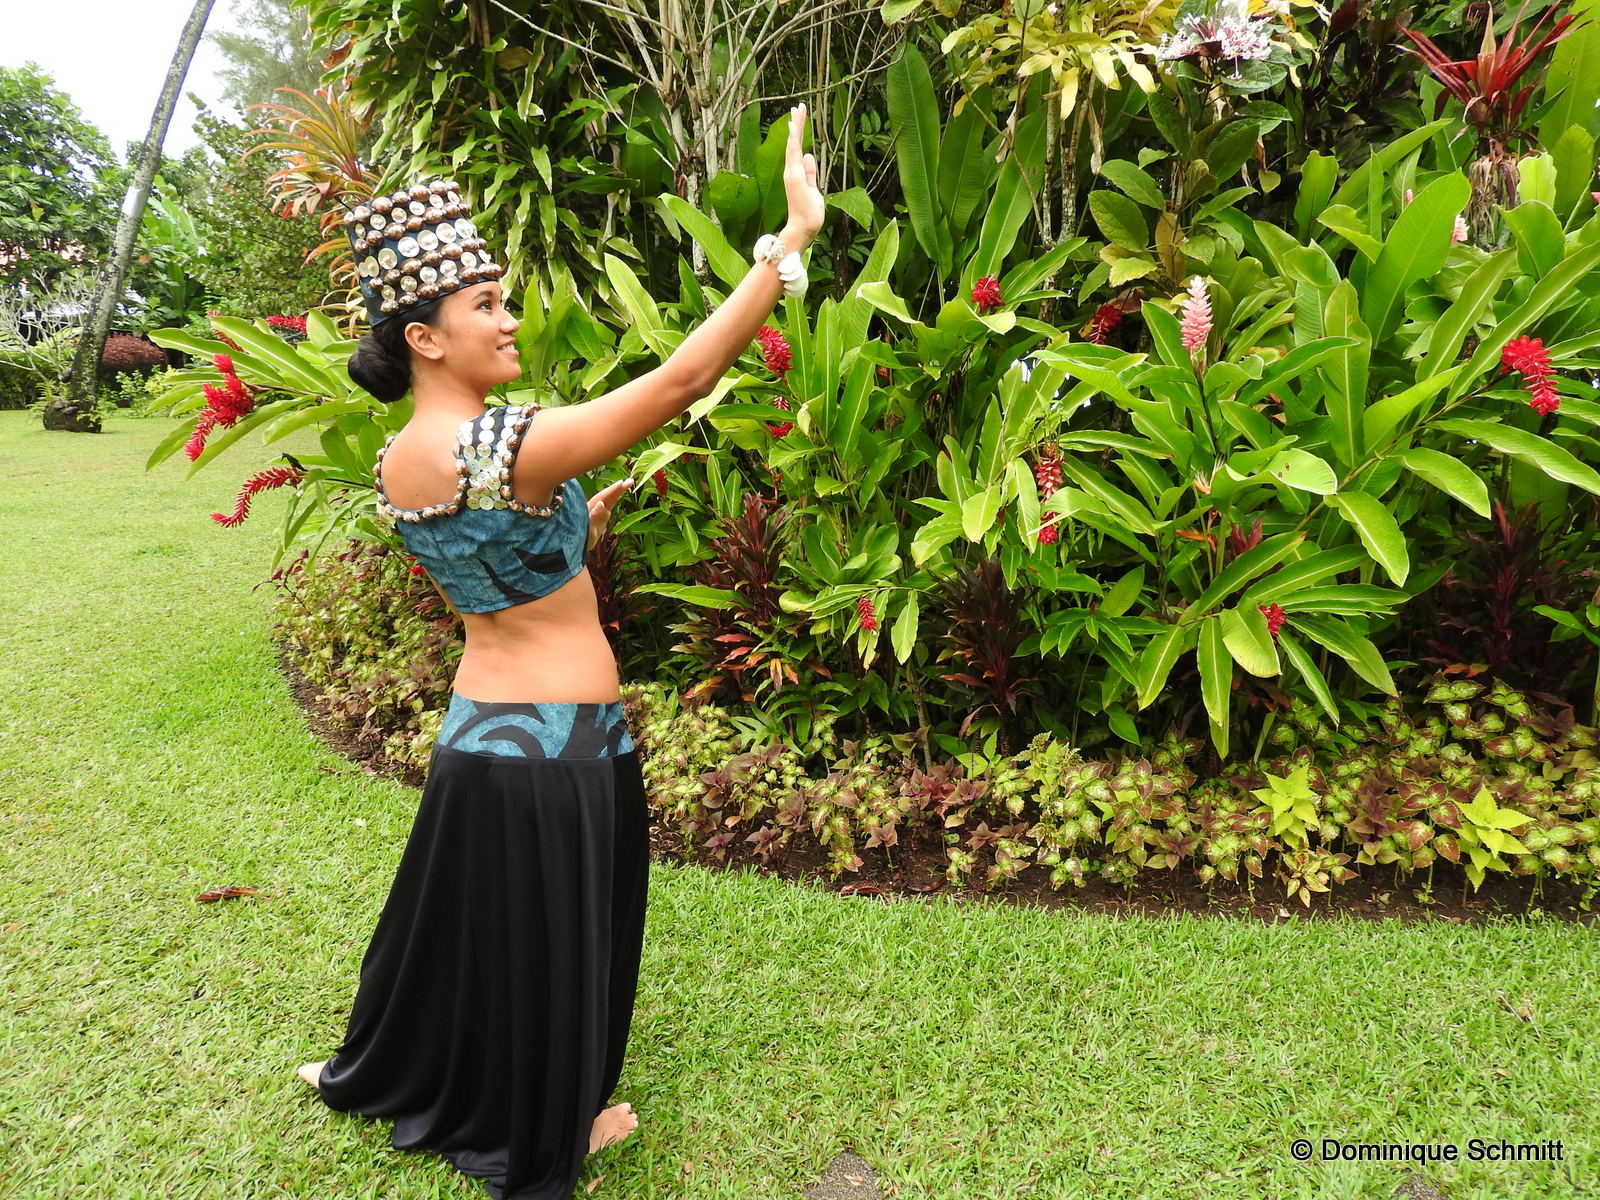 Sur notre photo prise chez Tumata Robinson, la danseuse Fenuaiti pose avec l'un des nouveaux costumes du spectacle.